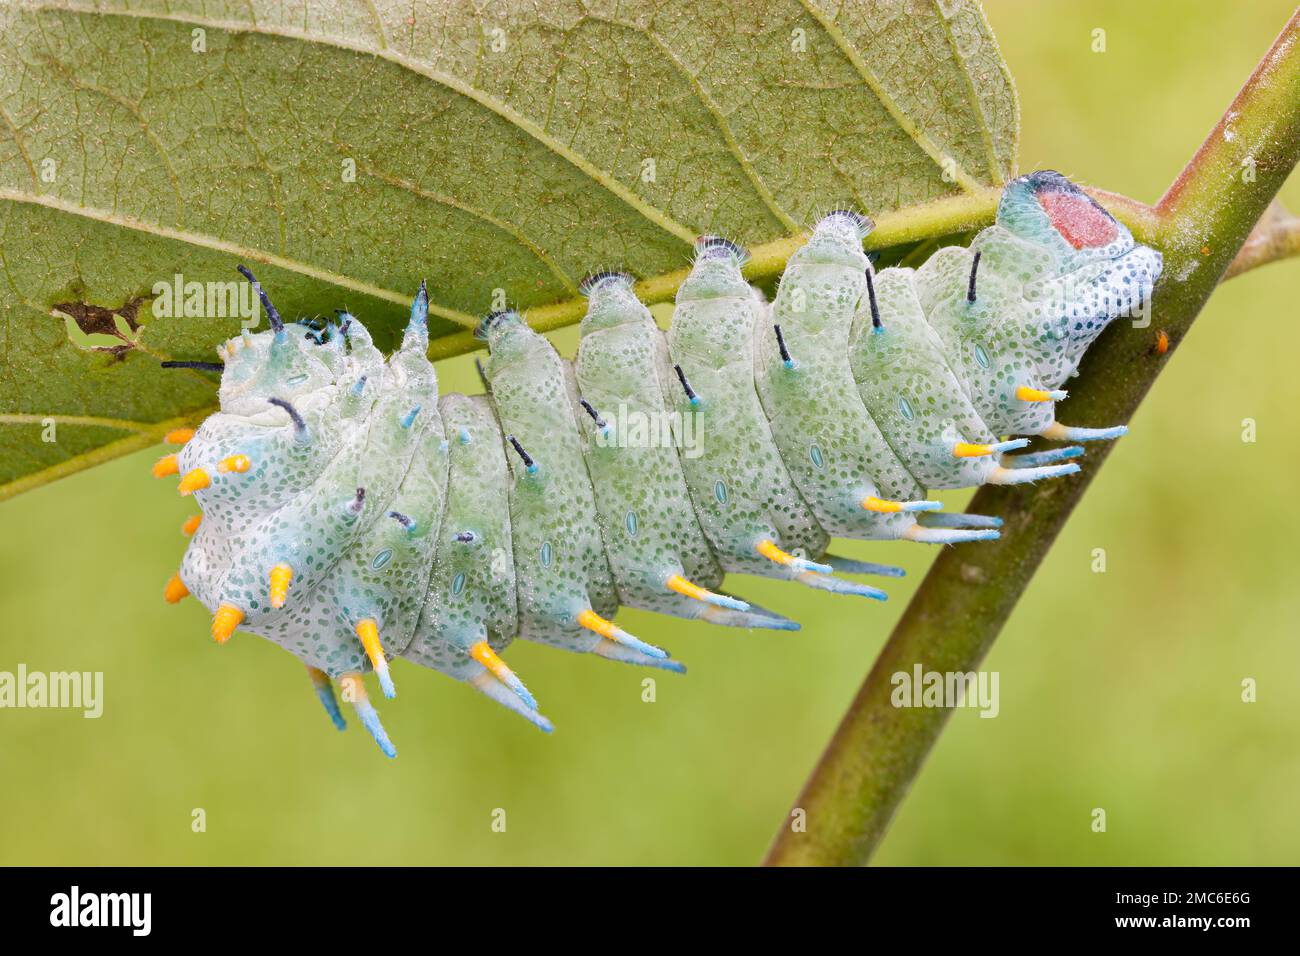 Lorquin's Atlas Moth (Attacus lorquini) caterpillar feeding on Ailanthus (Ailanthus altissima). Photographed in the Philippines. Stock Photo